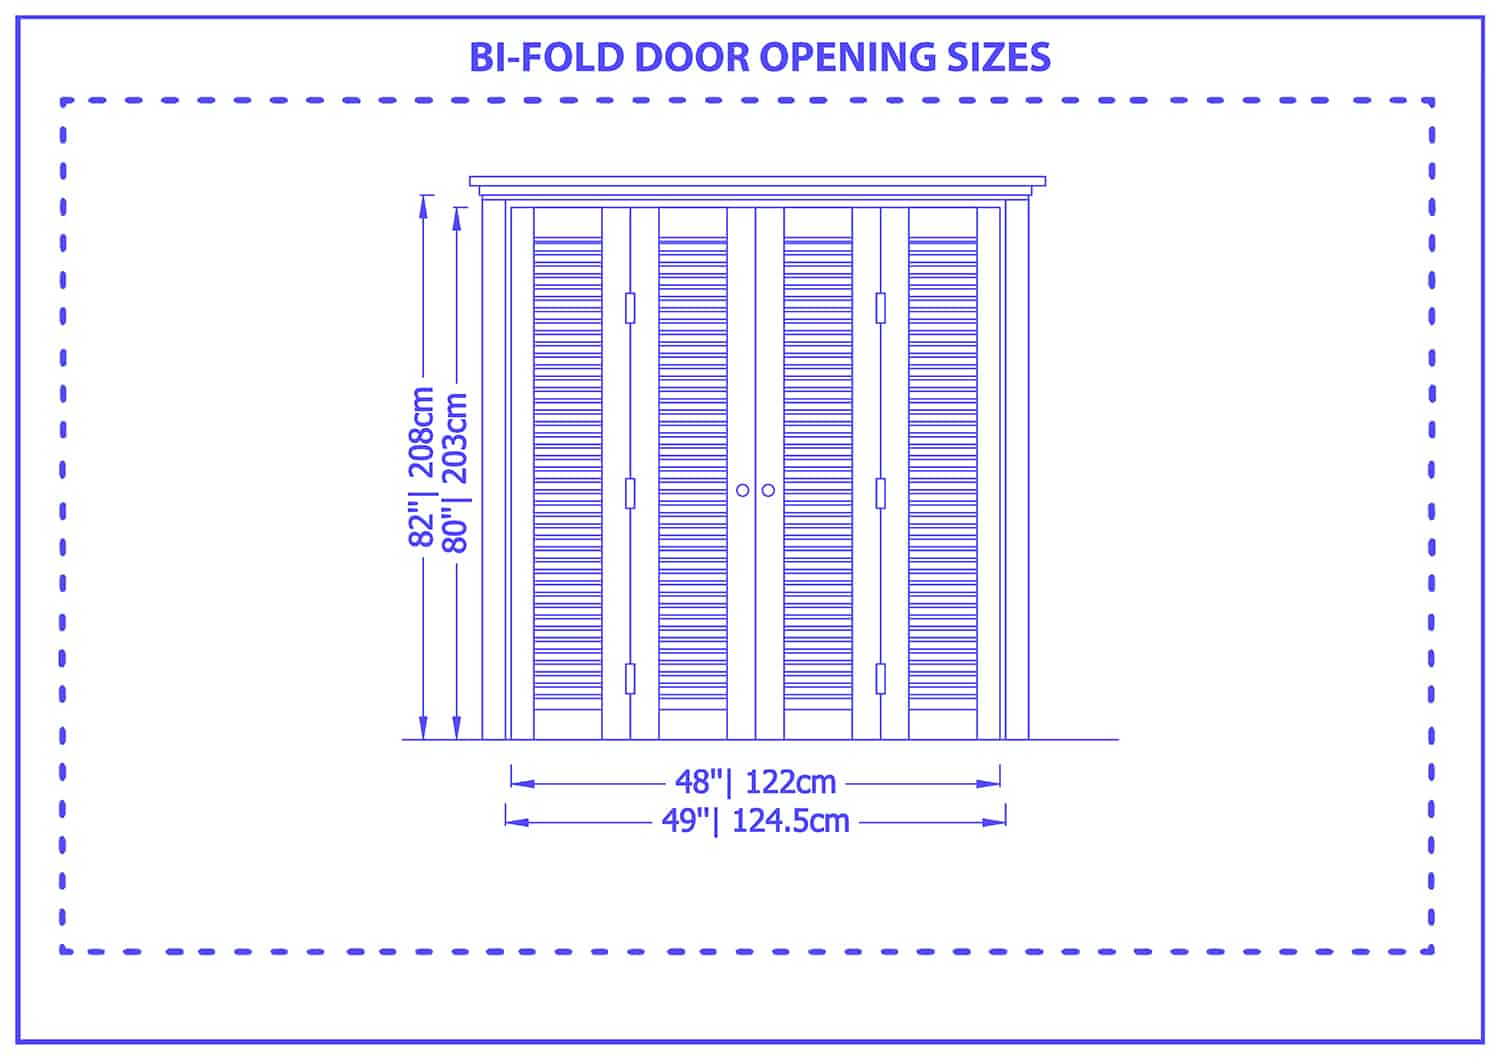 Bifold door opening sizes